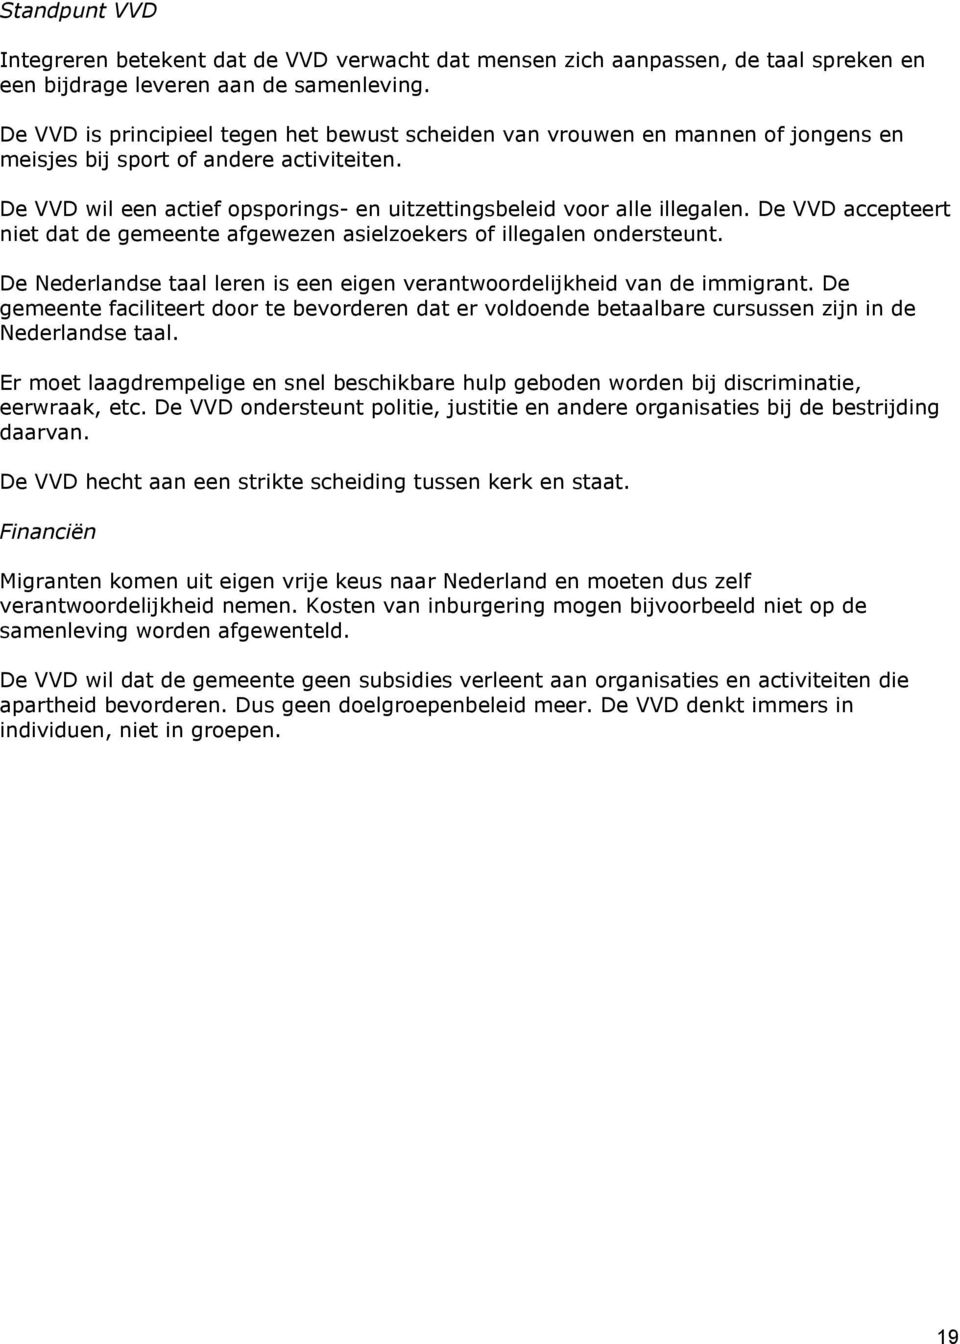 De VVD wil een actief opsporings- en uitzettingsbeleid voor alle illegalen. De VVD accepteert niet dat de gemeente afgewezen asielzoekers of illegalen ondersteunt.